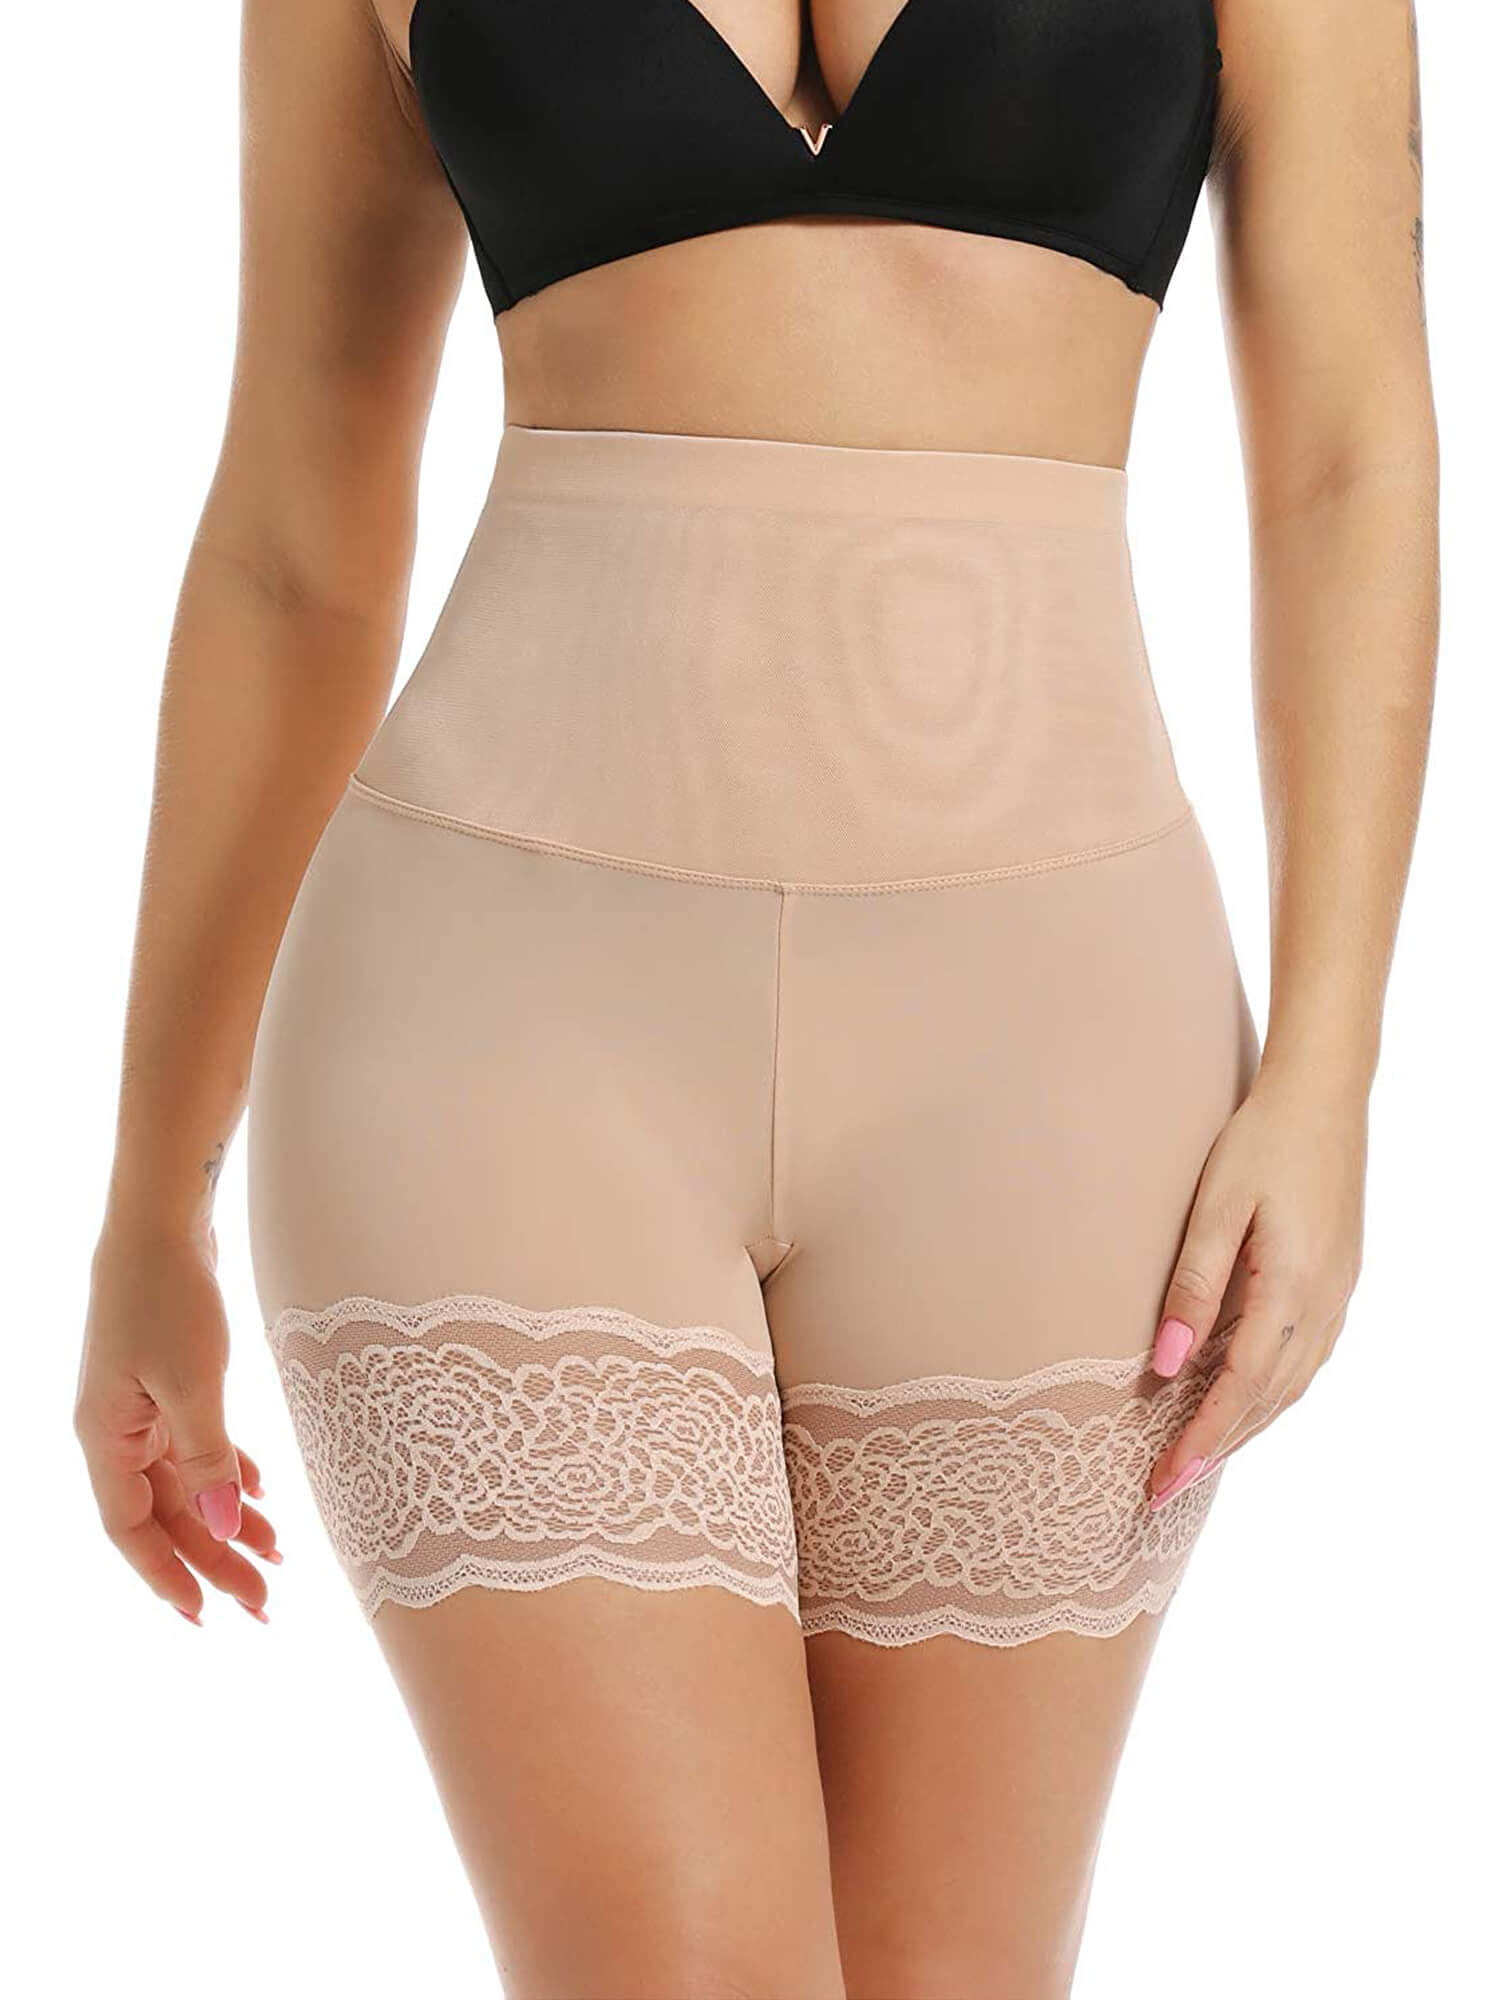 Vaslanda Seamless Anti Chafing Slip Shorts for Women Safety Panty Under Dress Belly Smooth Breathable Boyshort